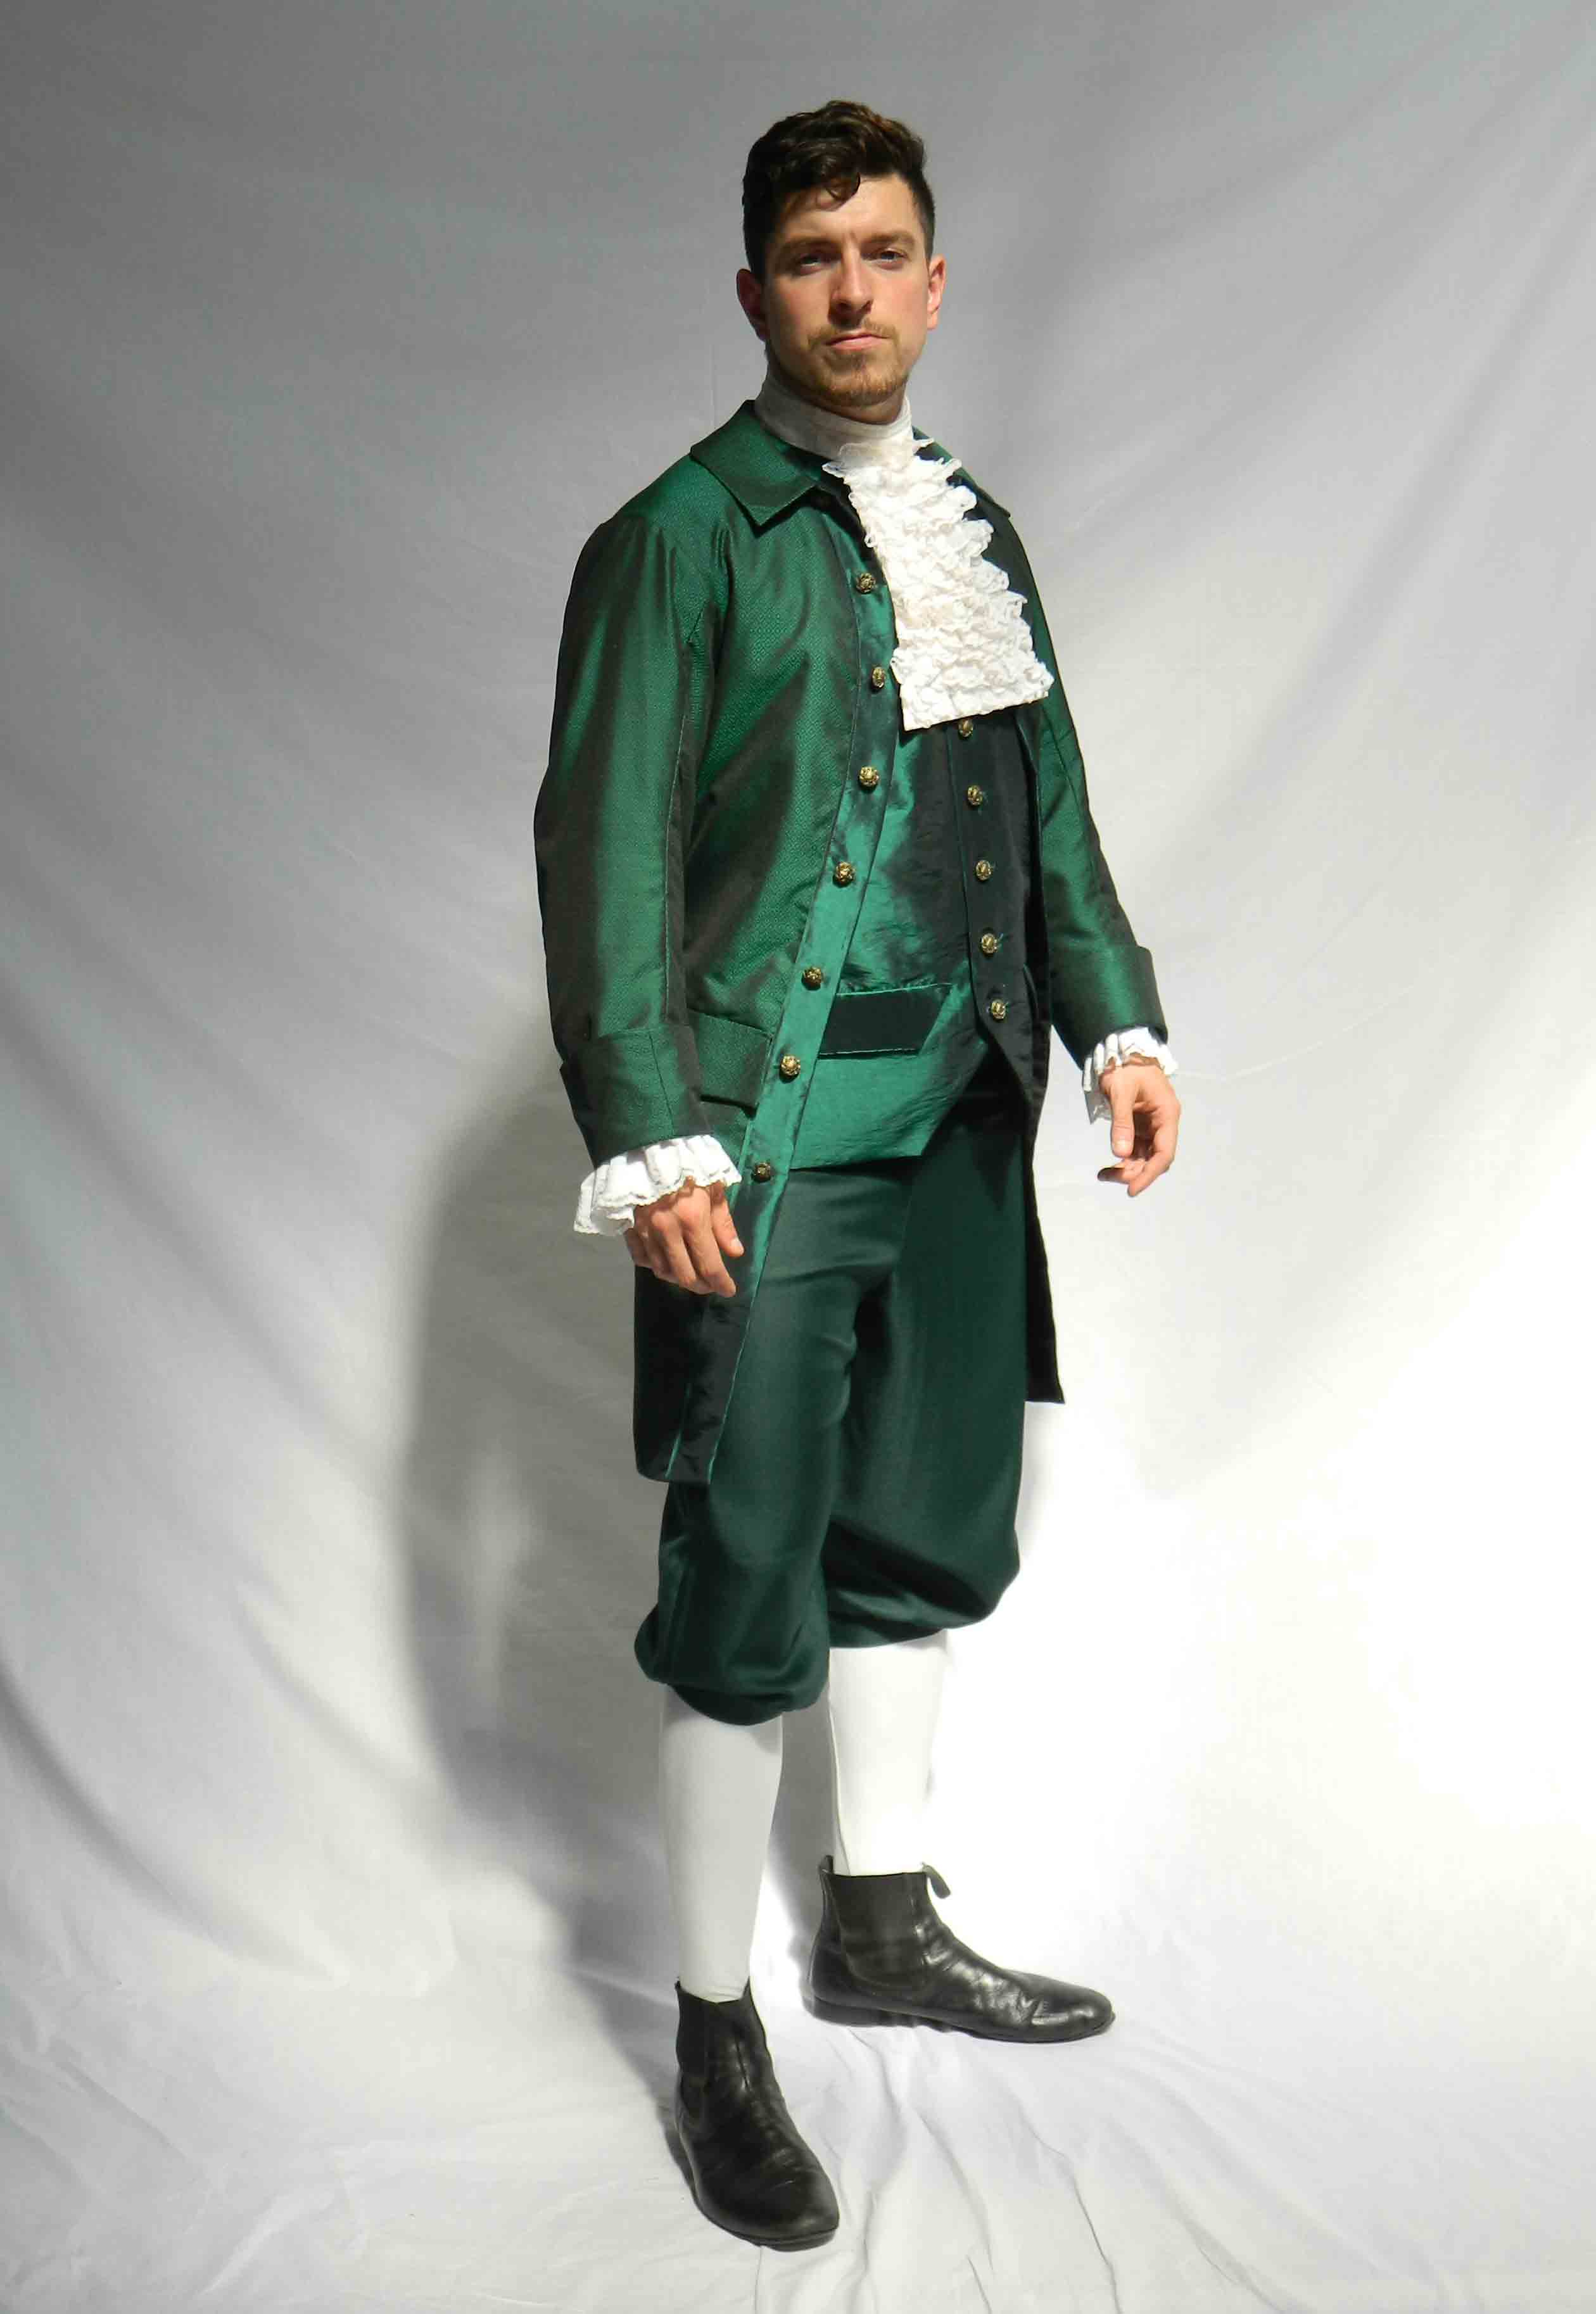 Emerald green georgian gents suit